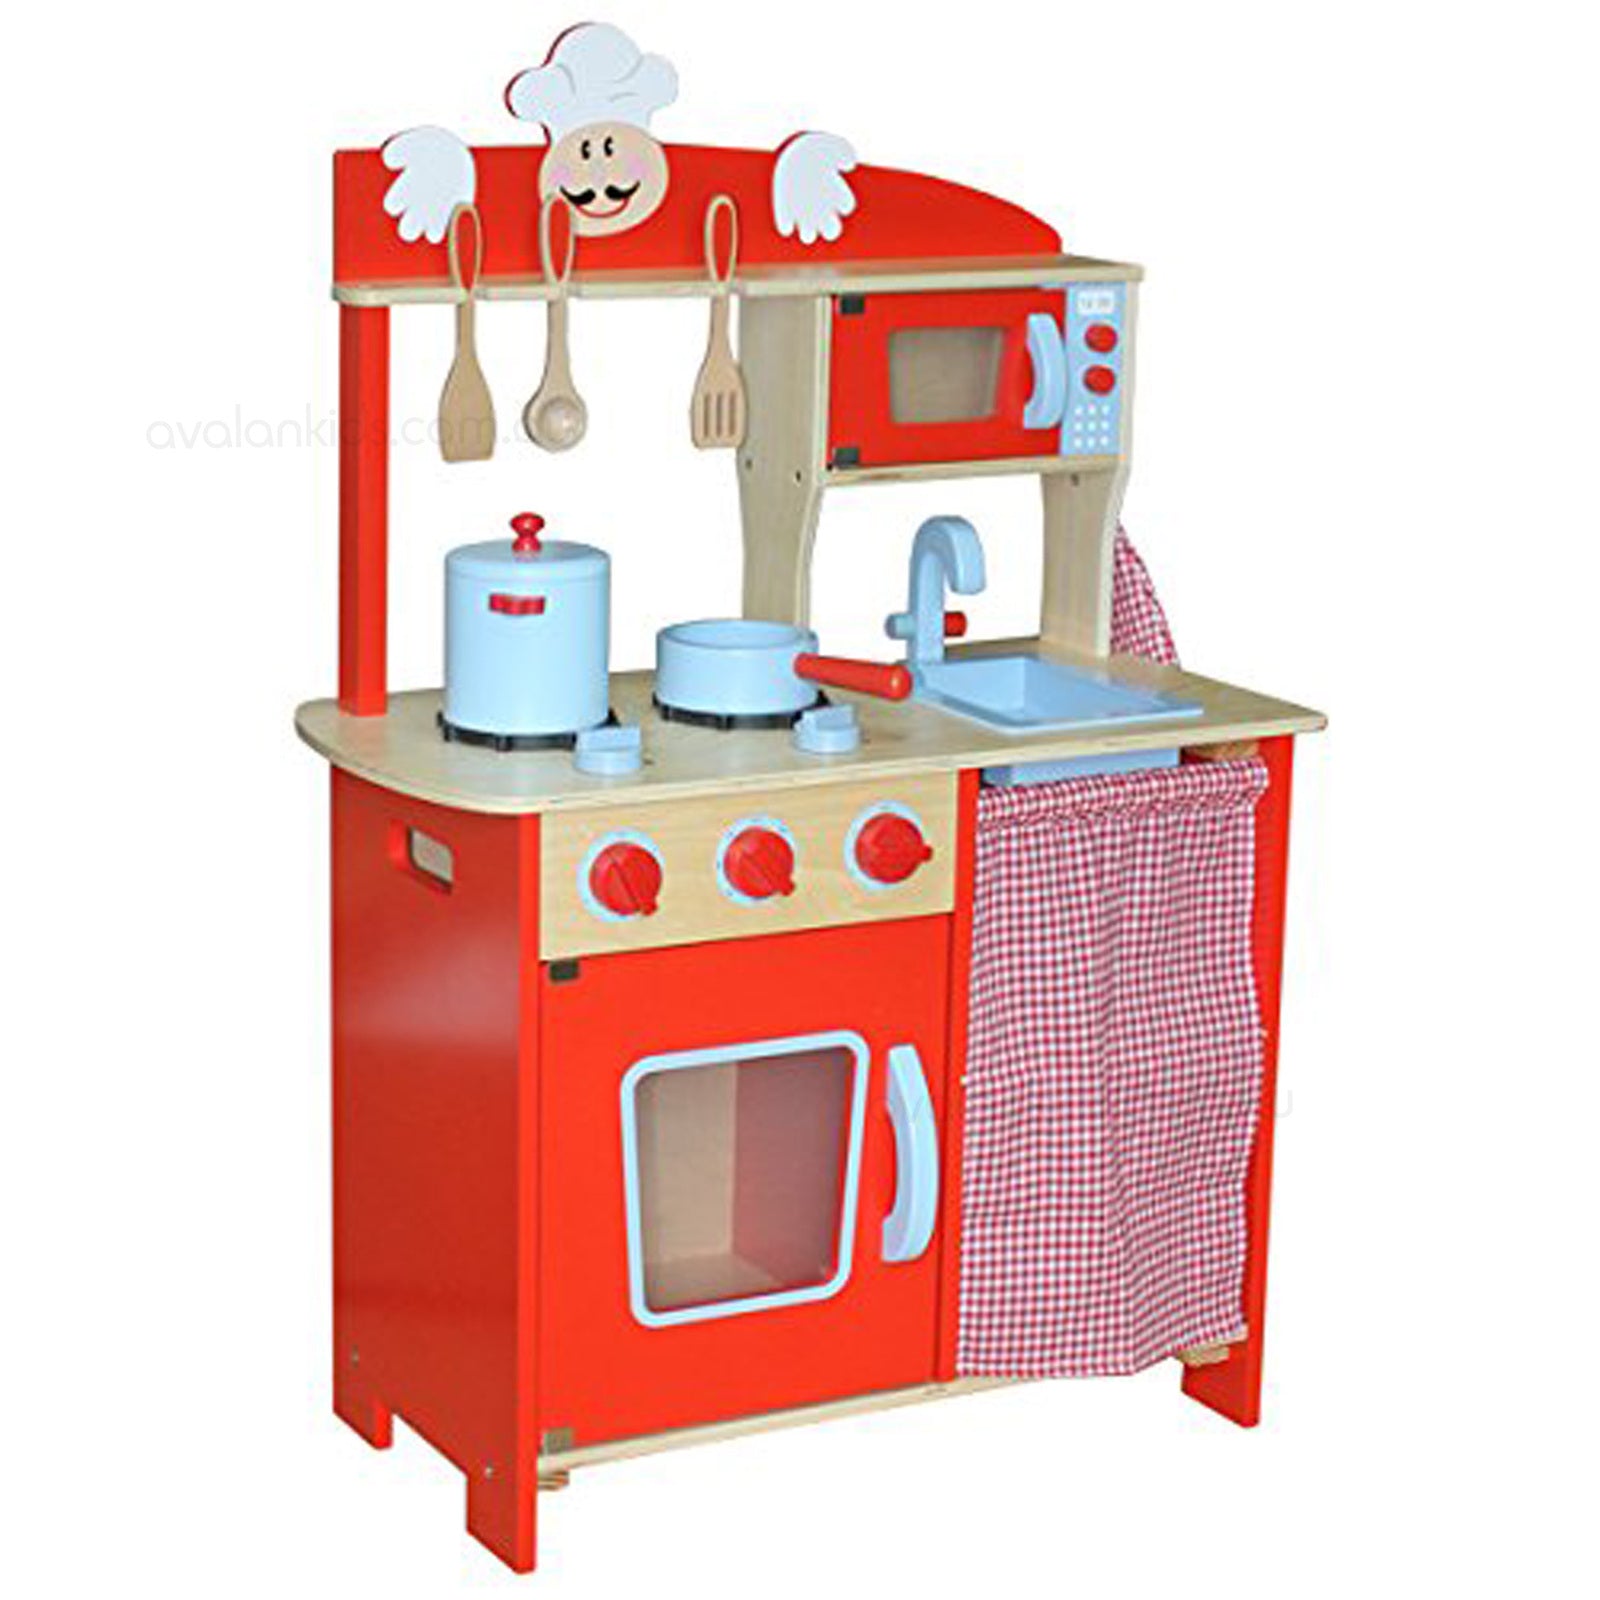 Wooden Kitchen - Chefs Red Play Kitchen